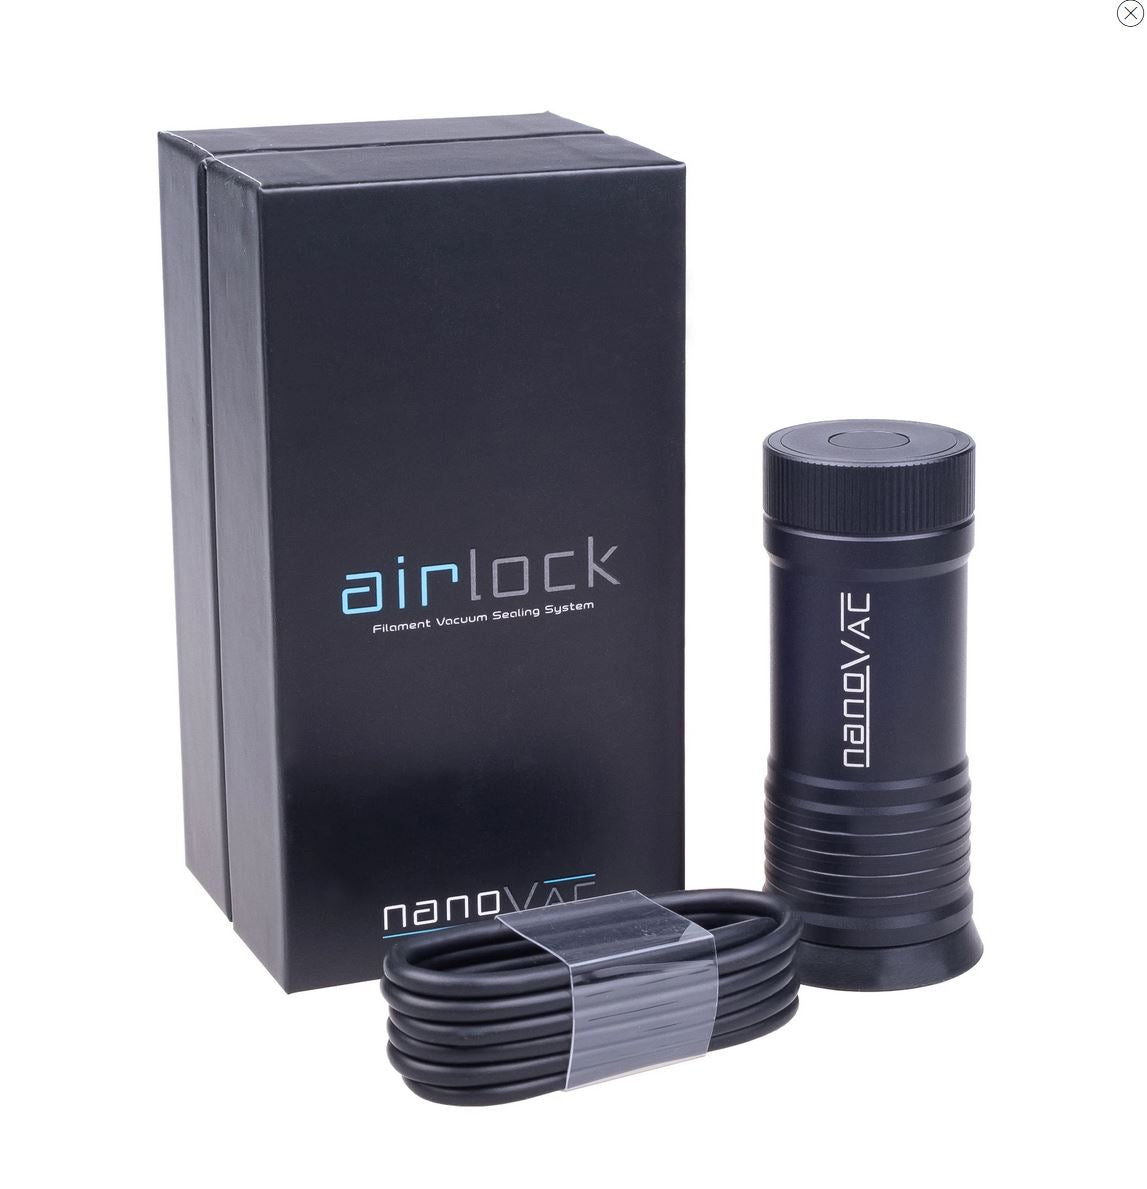 Nanovac Vacuum Pump & Airlock Bag Bundle